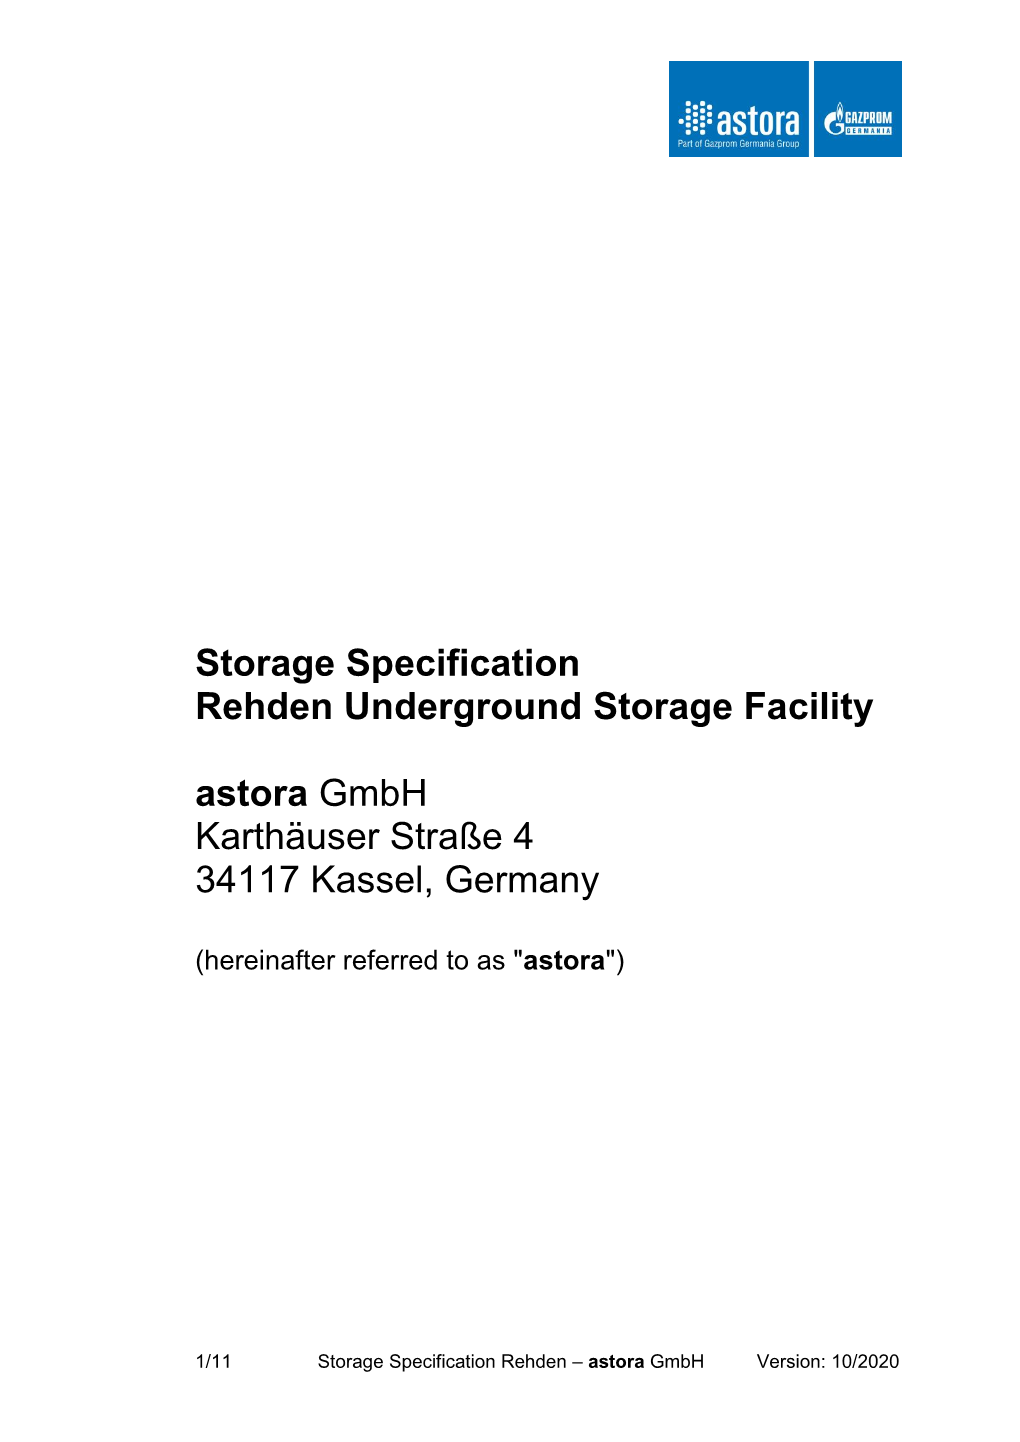 Storage Specification for Rehden Underground Storage Facility